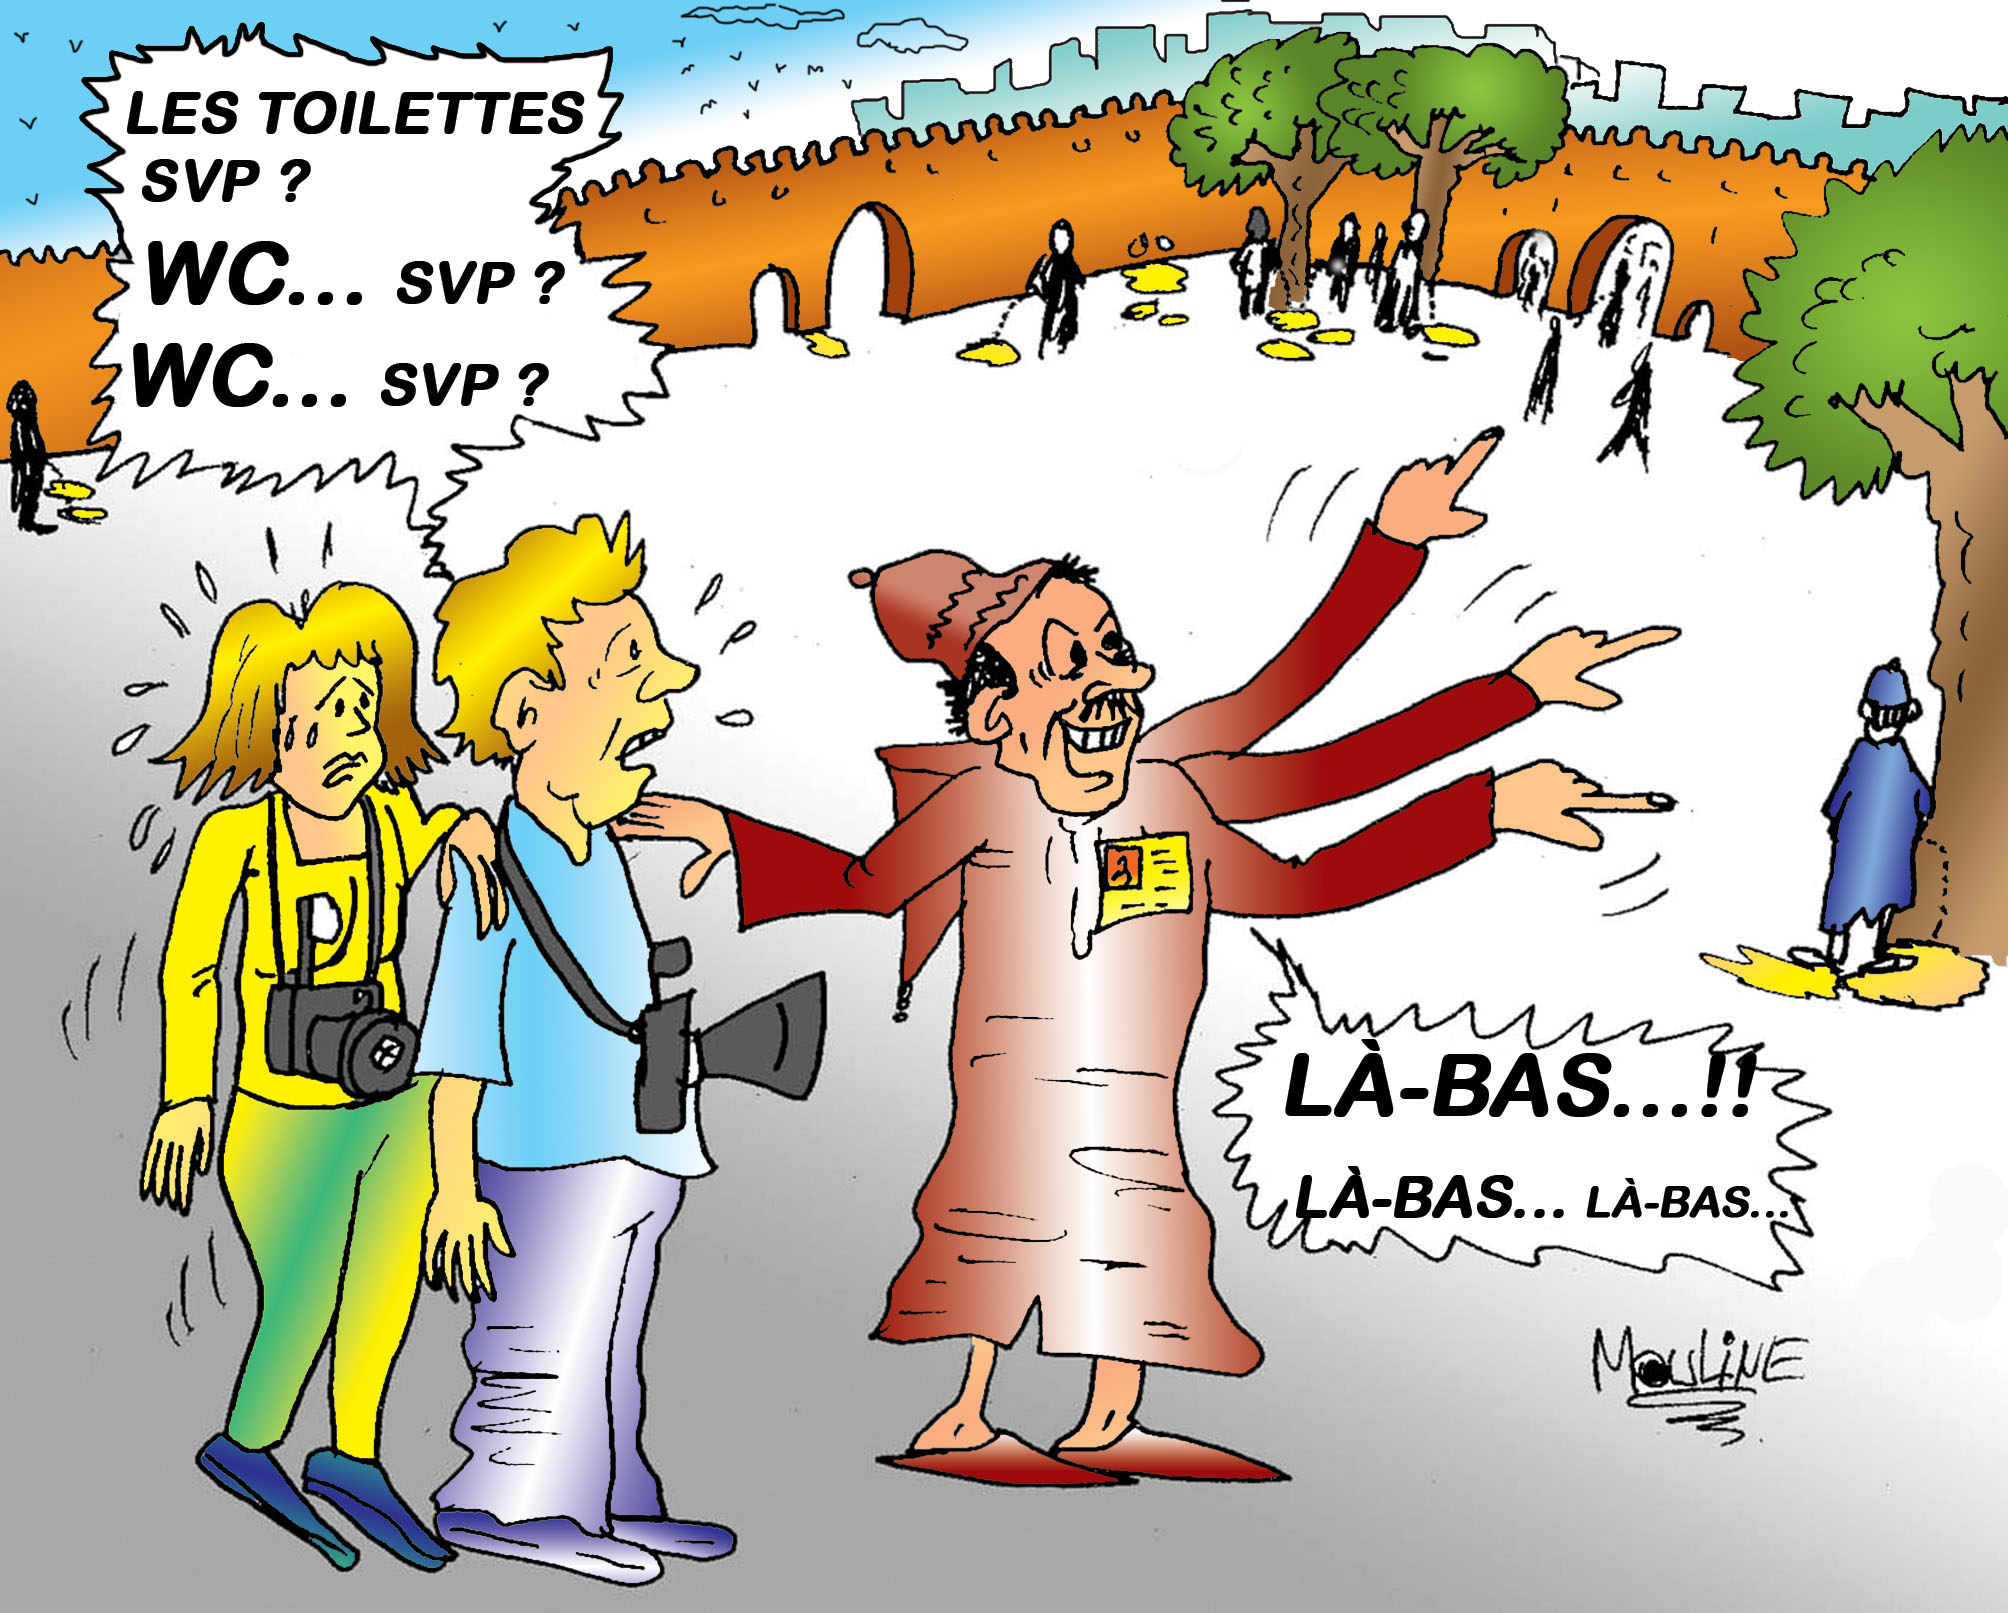 Les villes marocaines manquent sévèrement de toilettes publiques... !!!